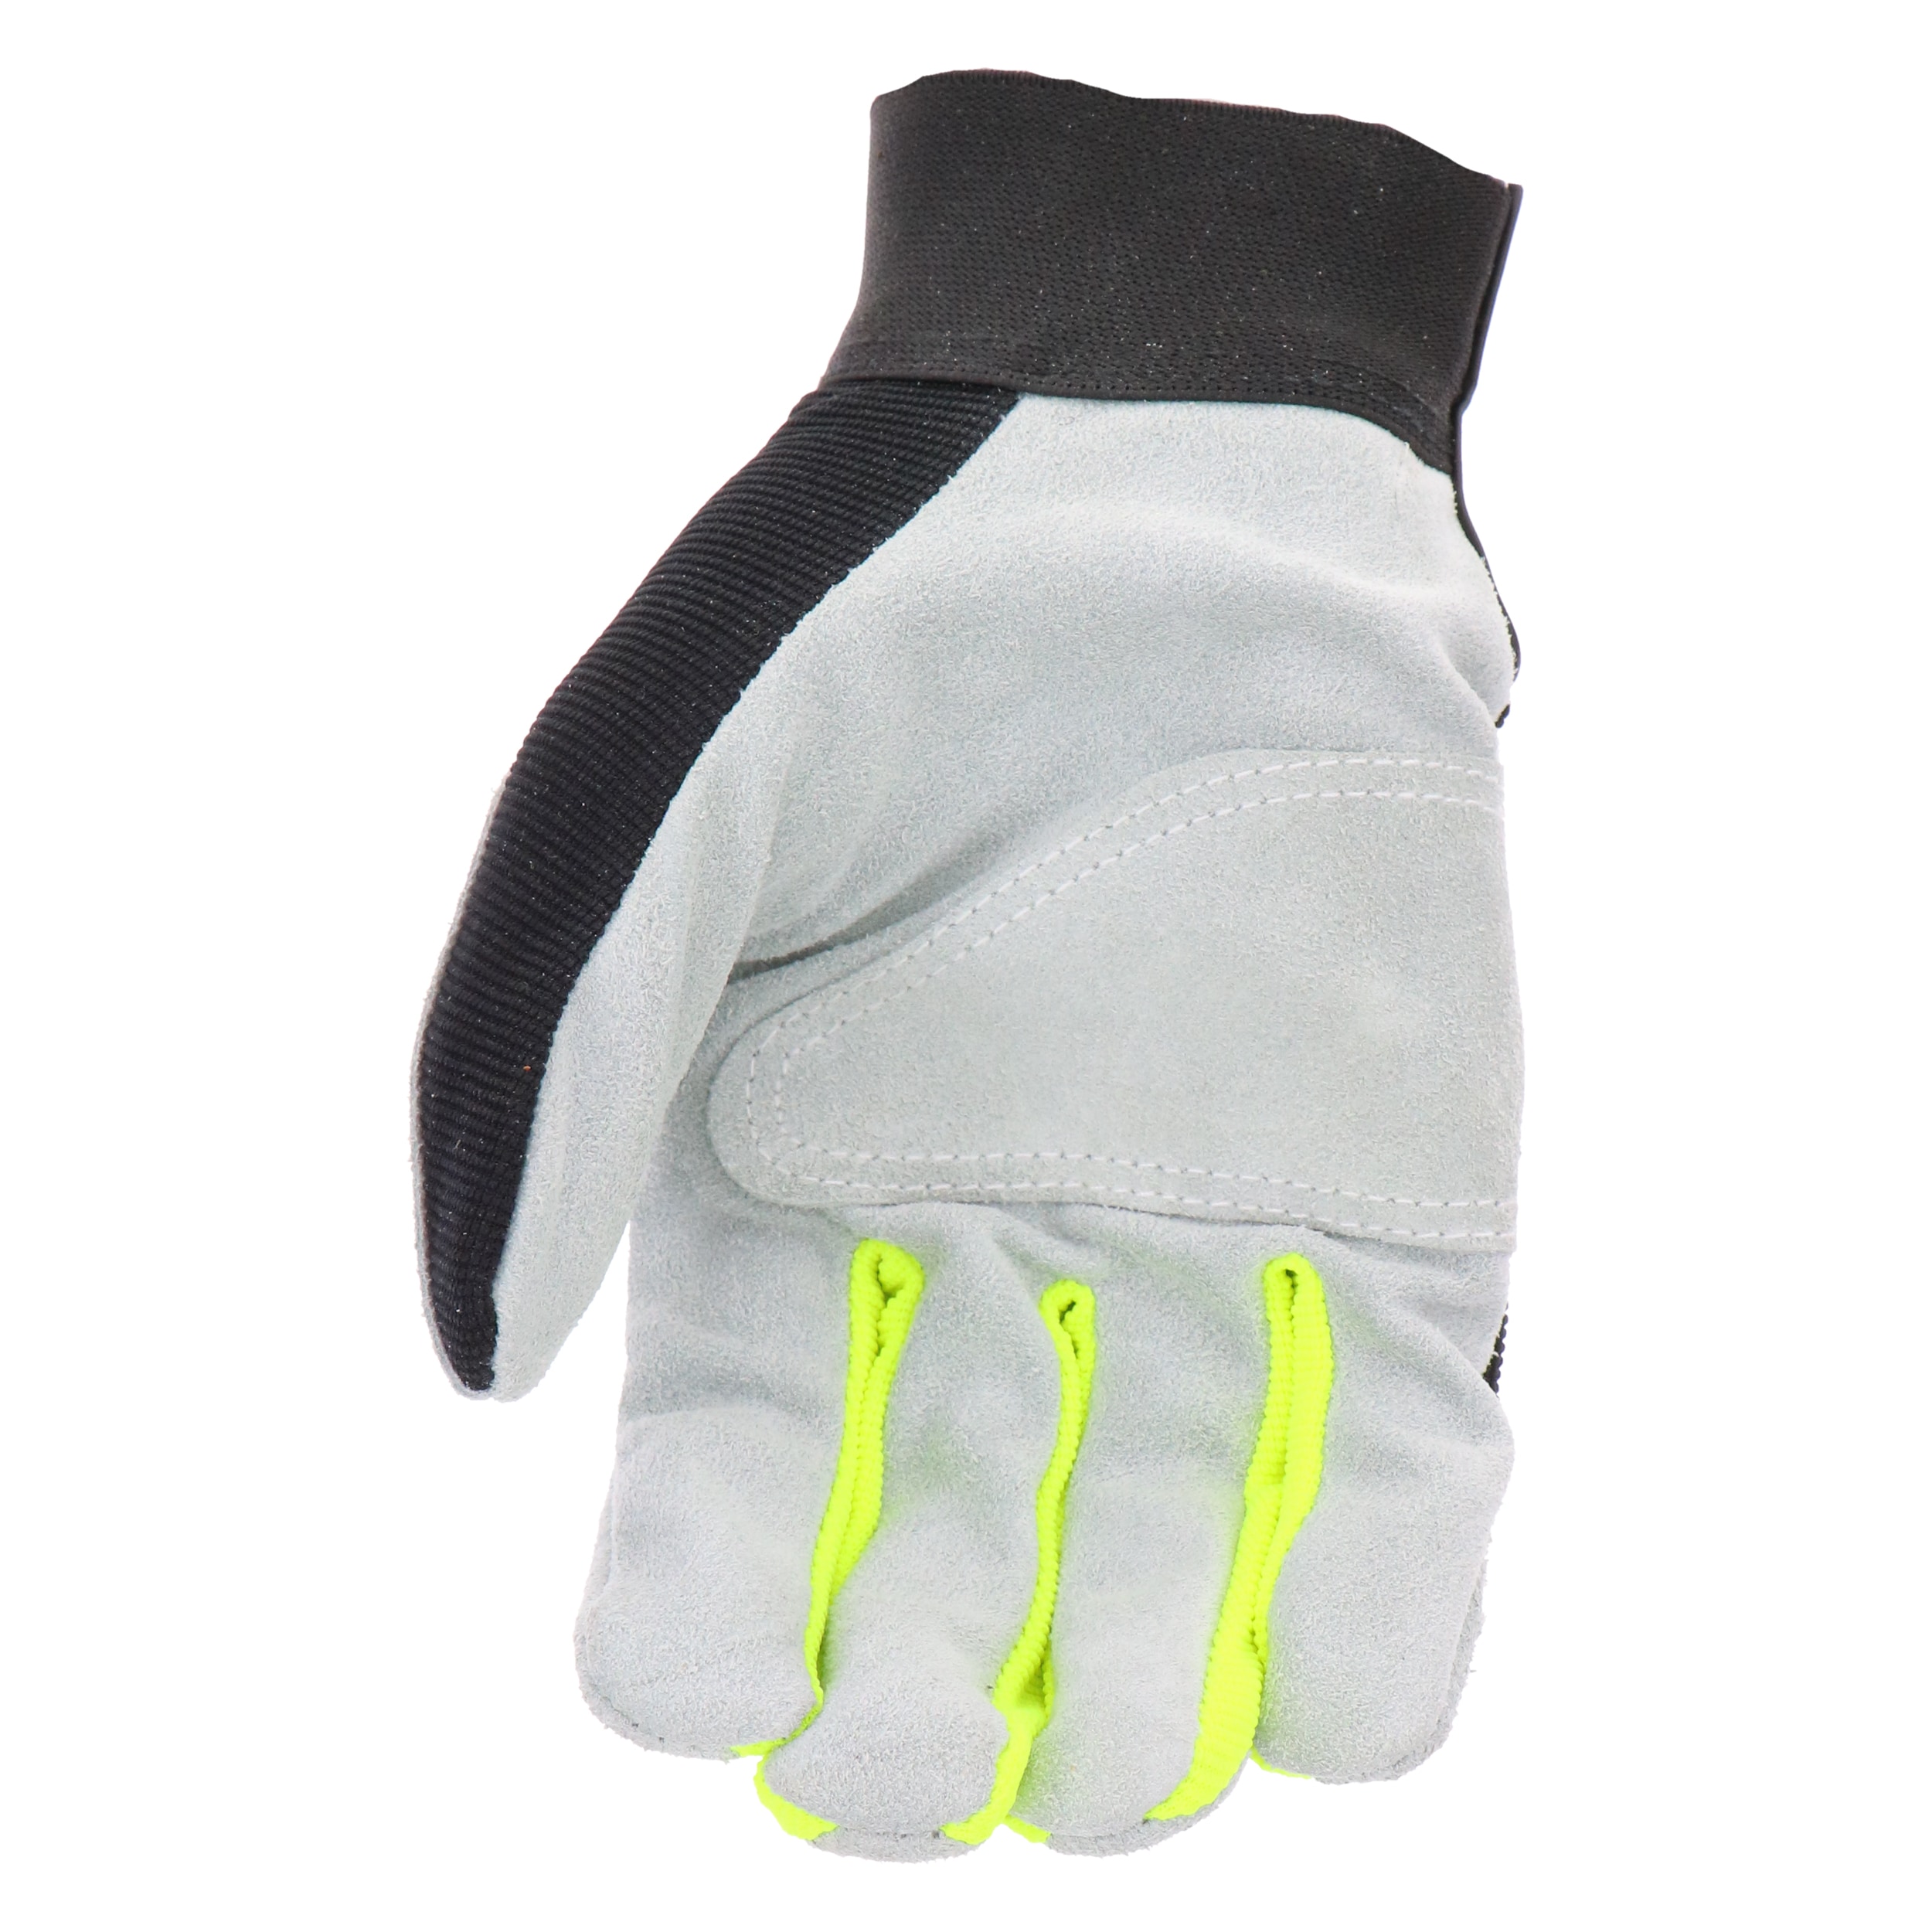 MSUPSAV Work Gloves for Men,Mens Work Gloves,Utility Working